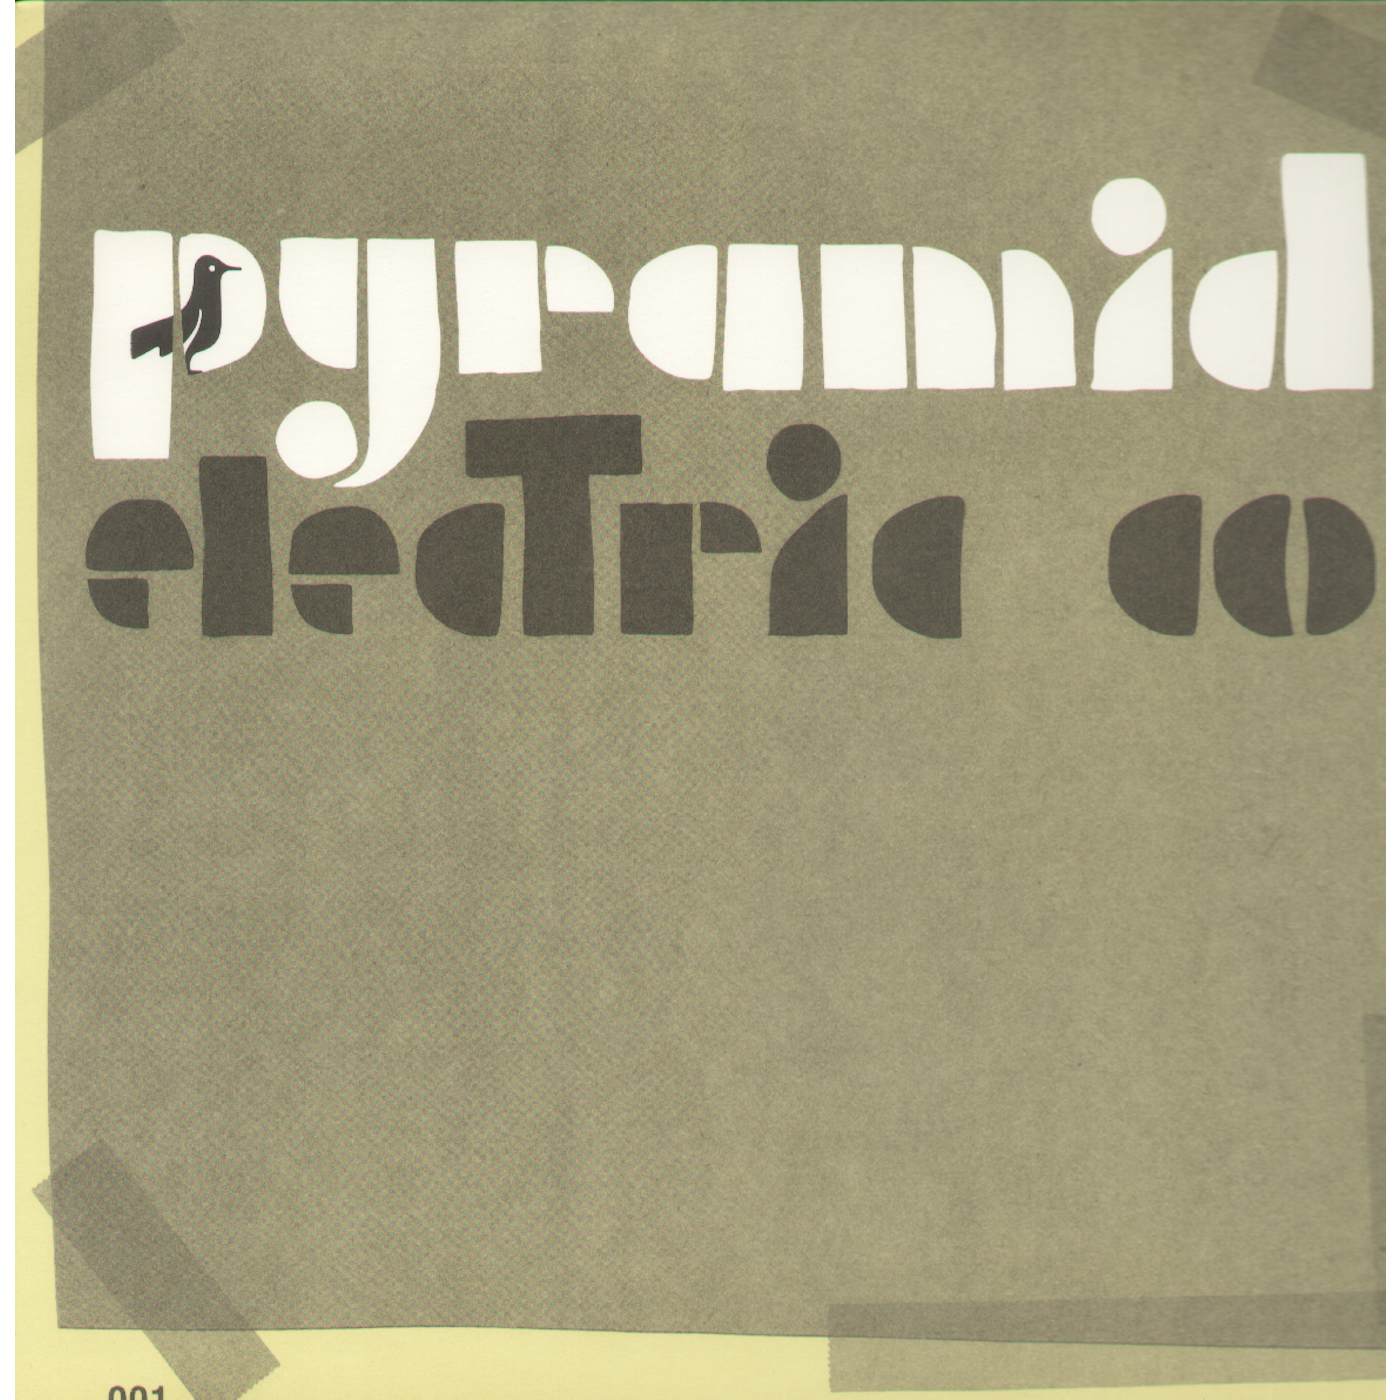 Jason Molina Pyramid Electric Co Vinyl Record